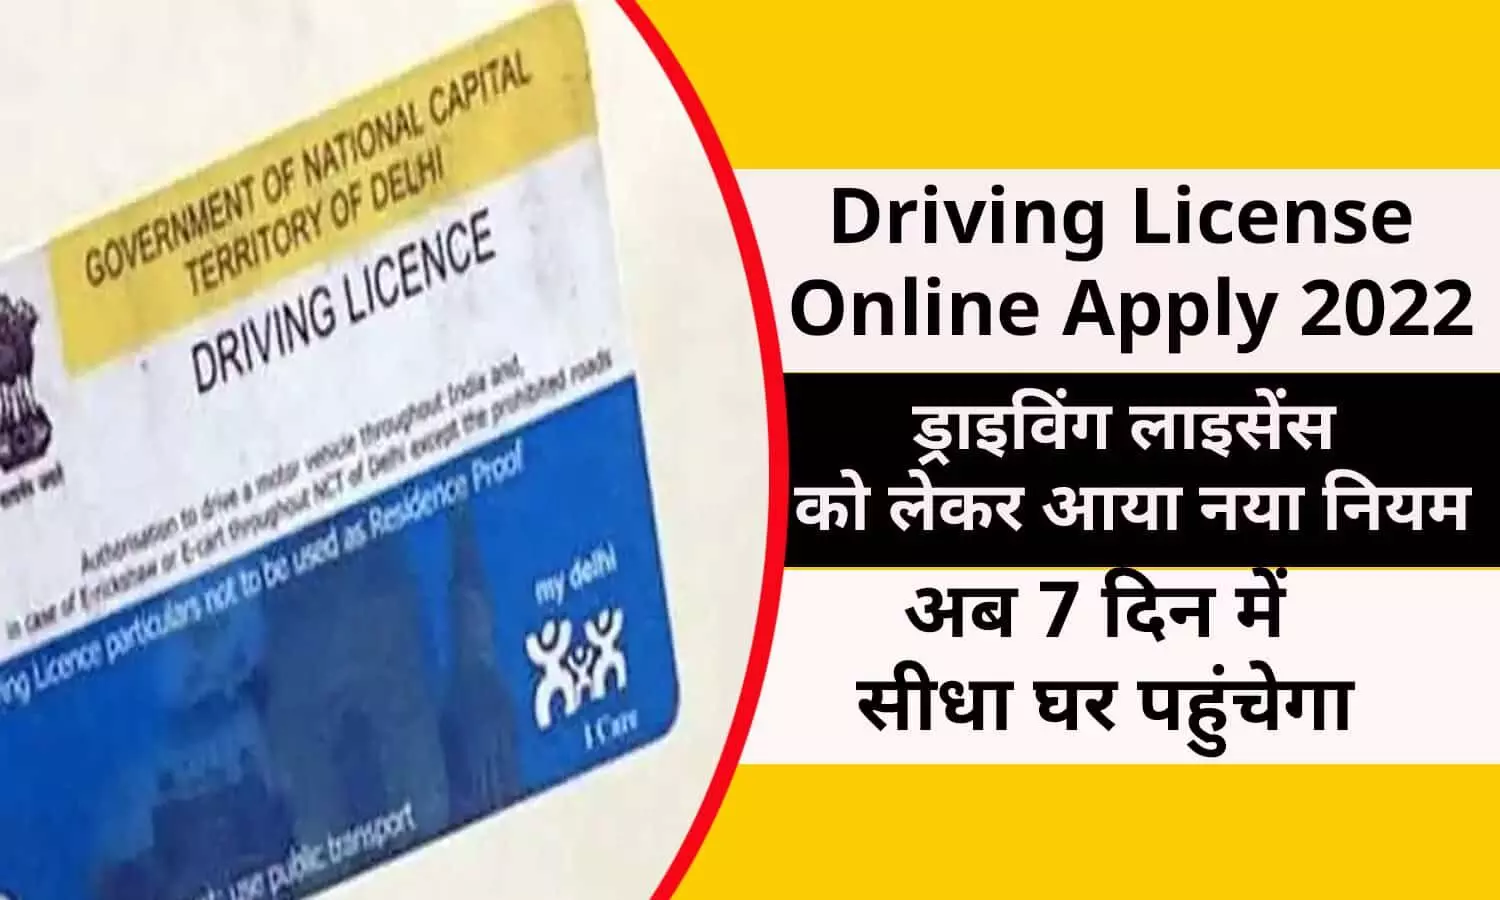 Driving License Online Apply 2022: खुशखबरी! ड्राइविंग लाइसेंस को लेकर आया नया नियम, अब 7 दिन में सीधा घर पहुंचेगा, जानिए फटाफट